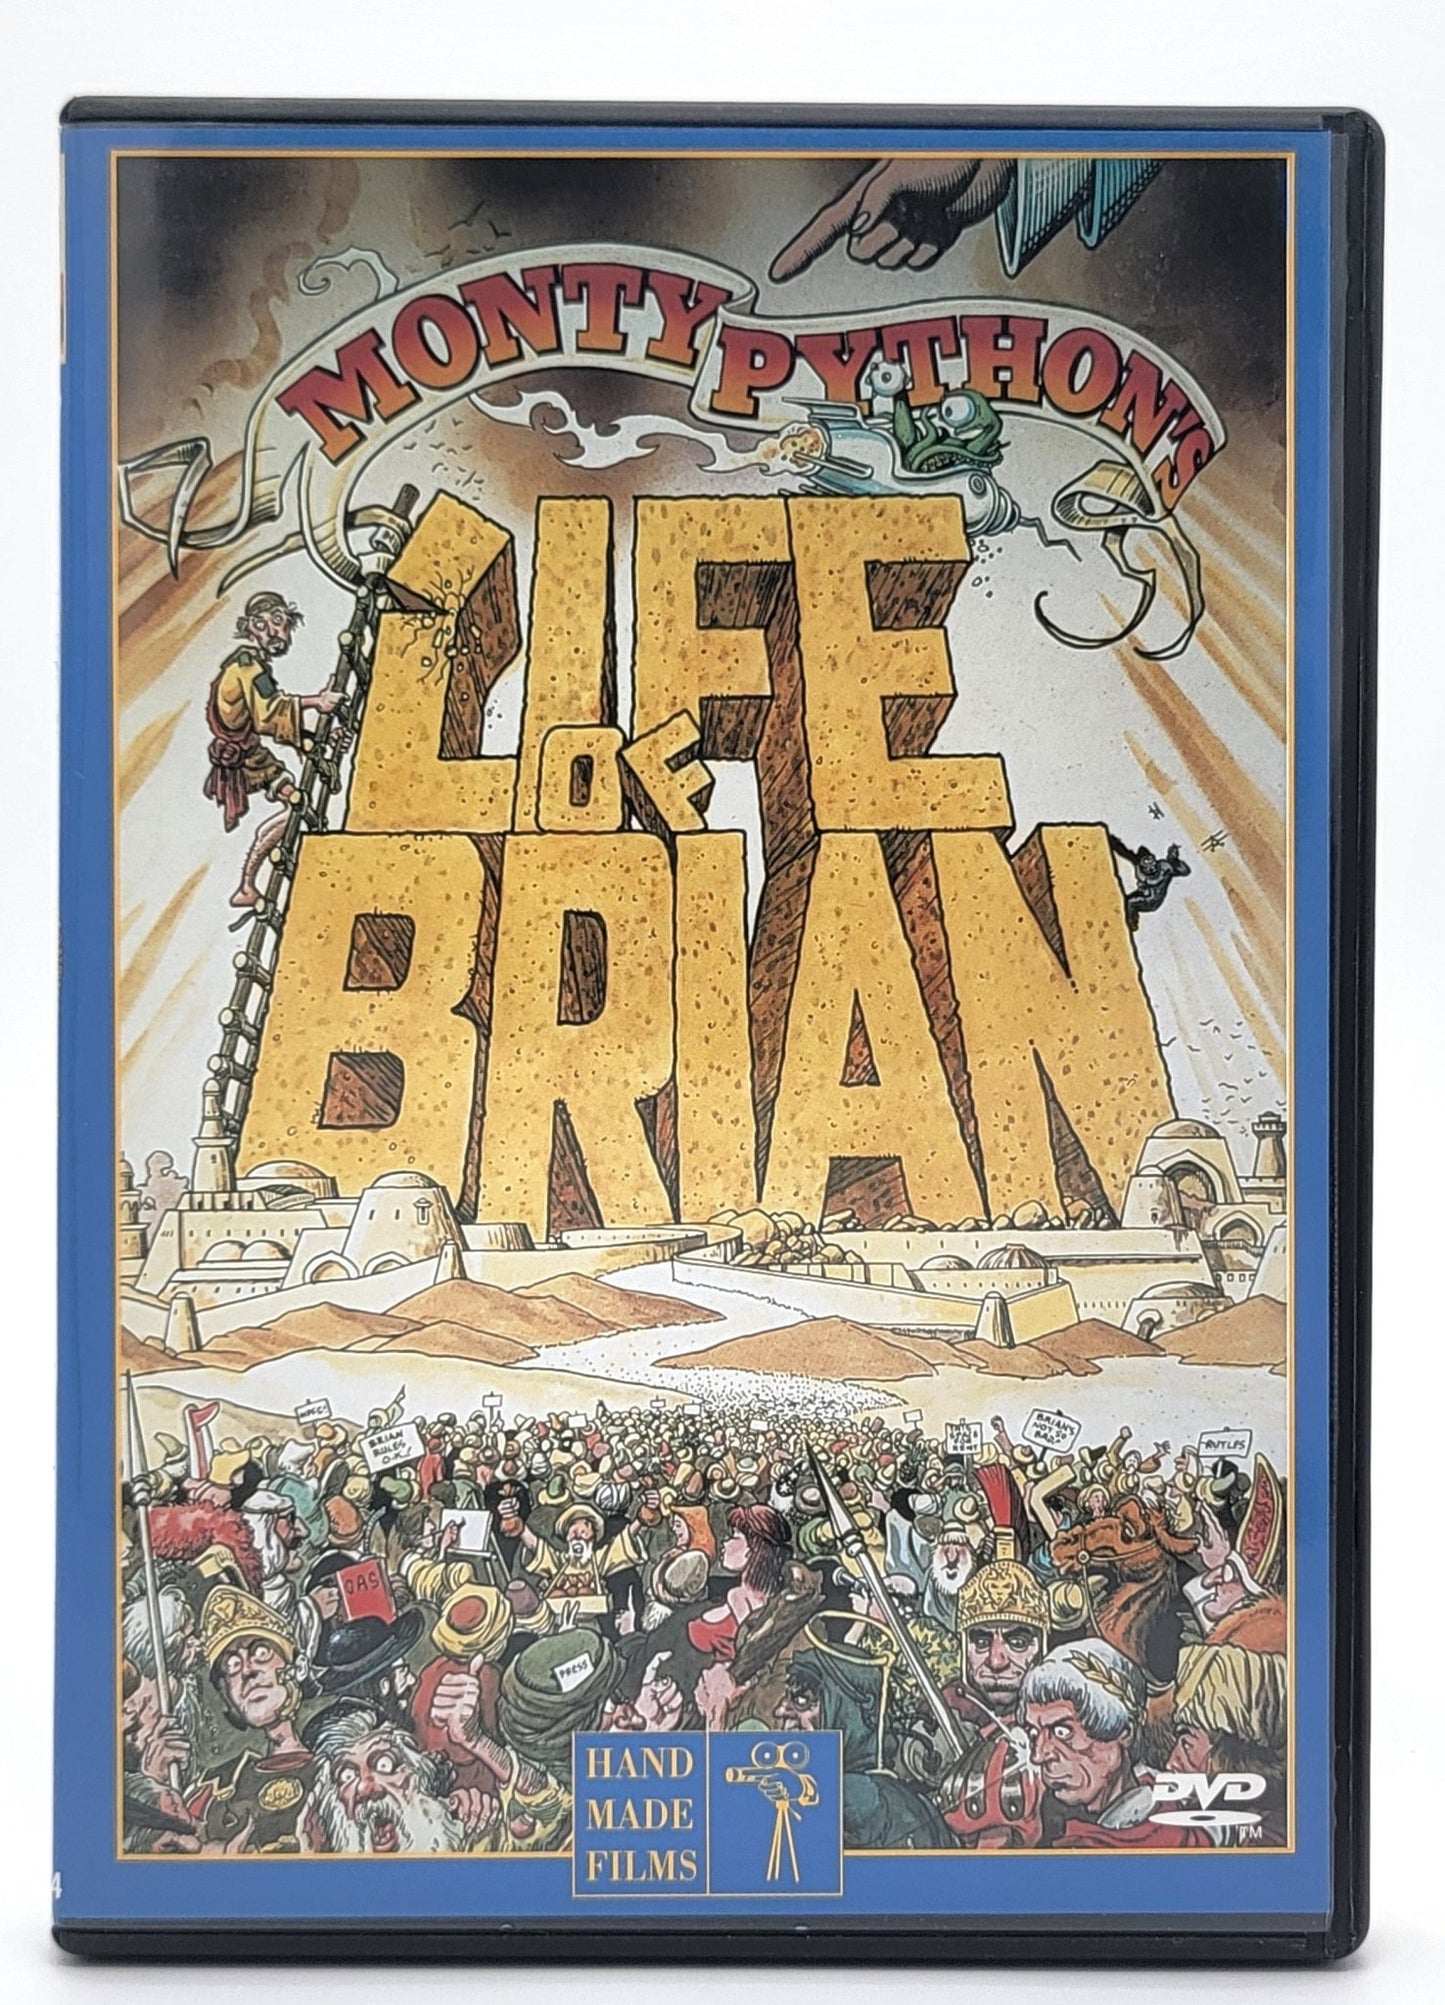 Anchor Bay - Monty Python's Life of Brian | DVD | Widescreen - DVD - Steady Bunny Shop